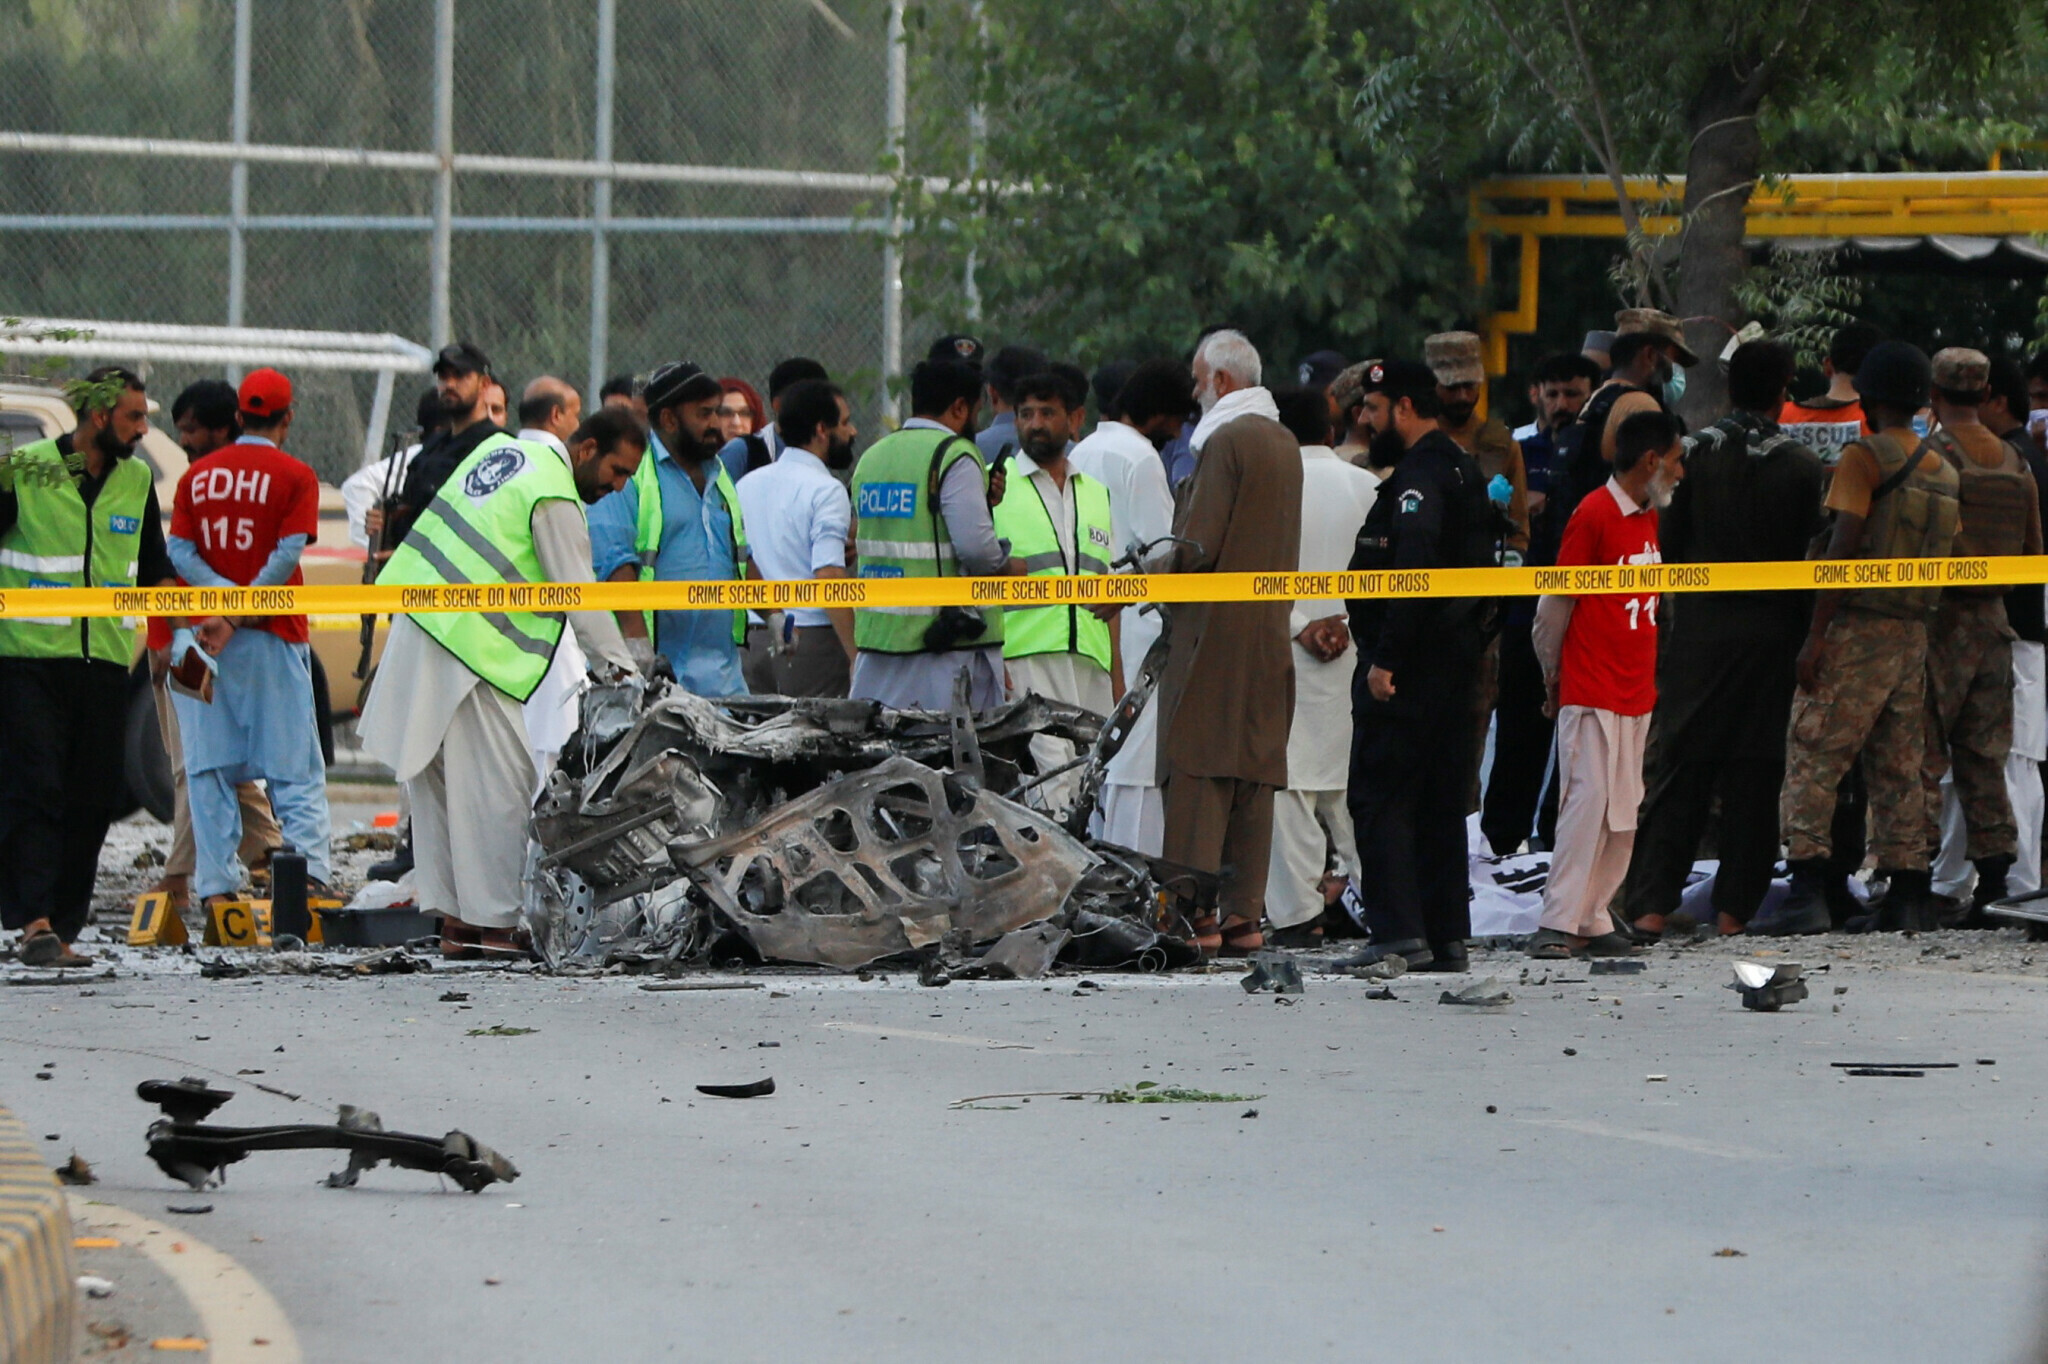 bajaur suicide blast death toll rises to 63 photo reuters